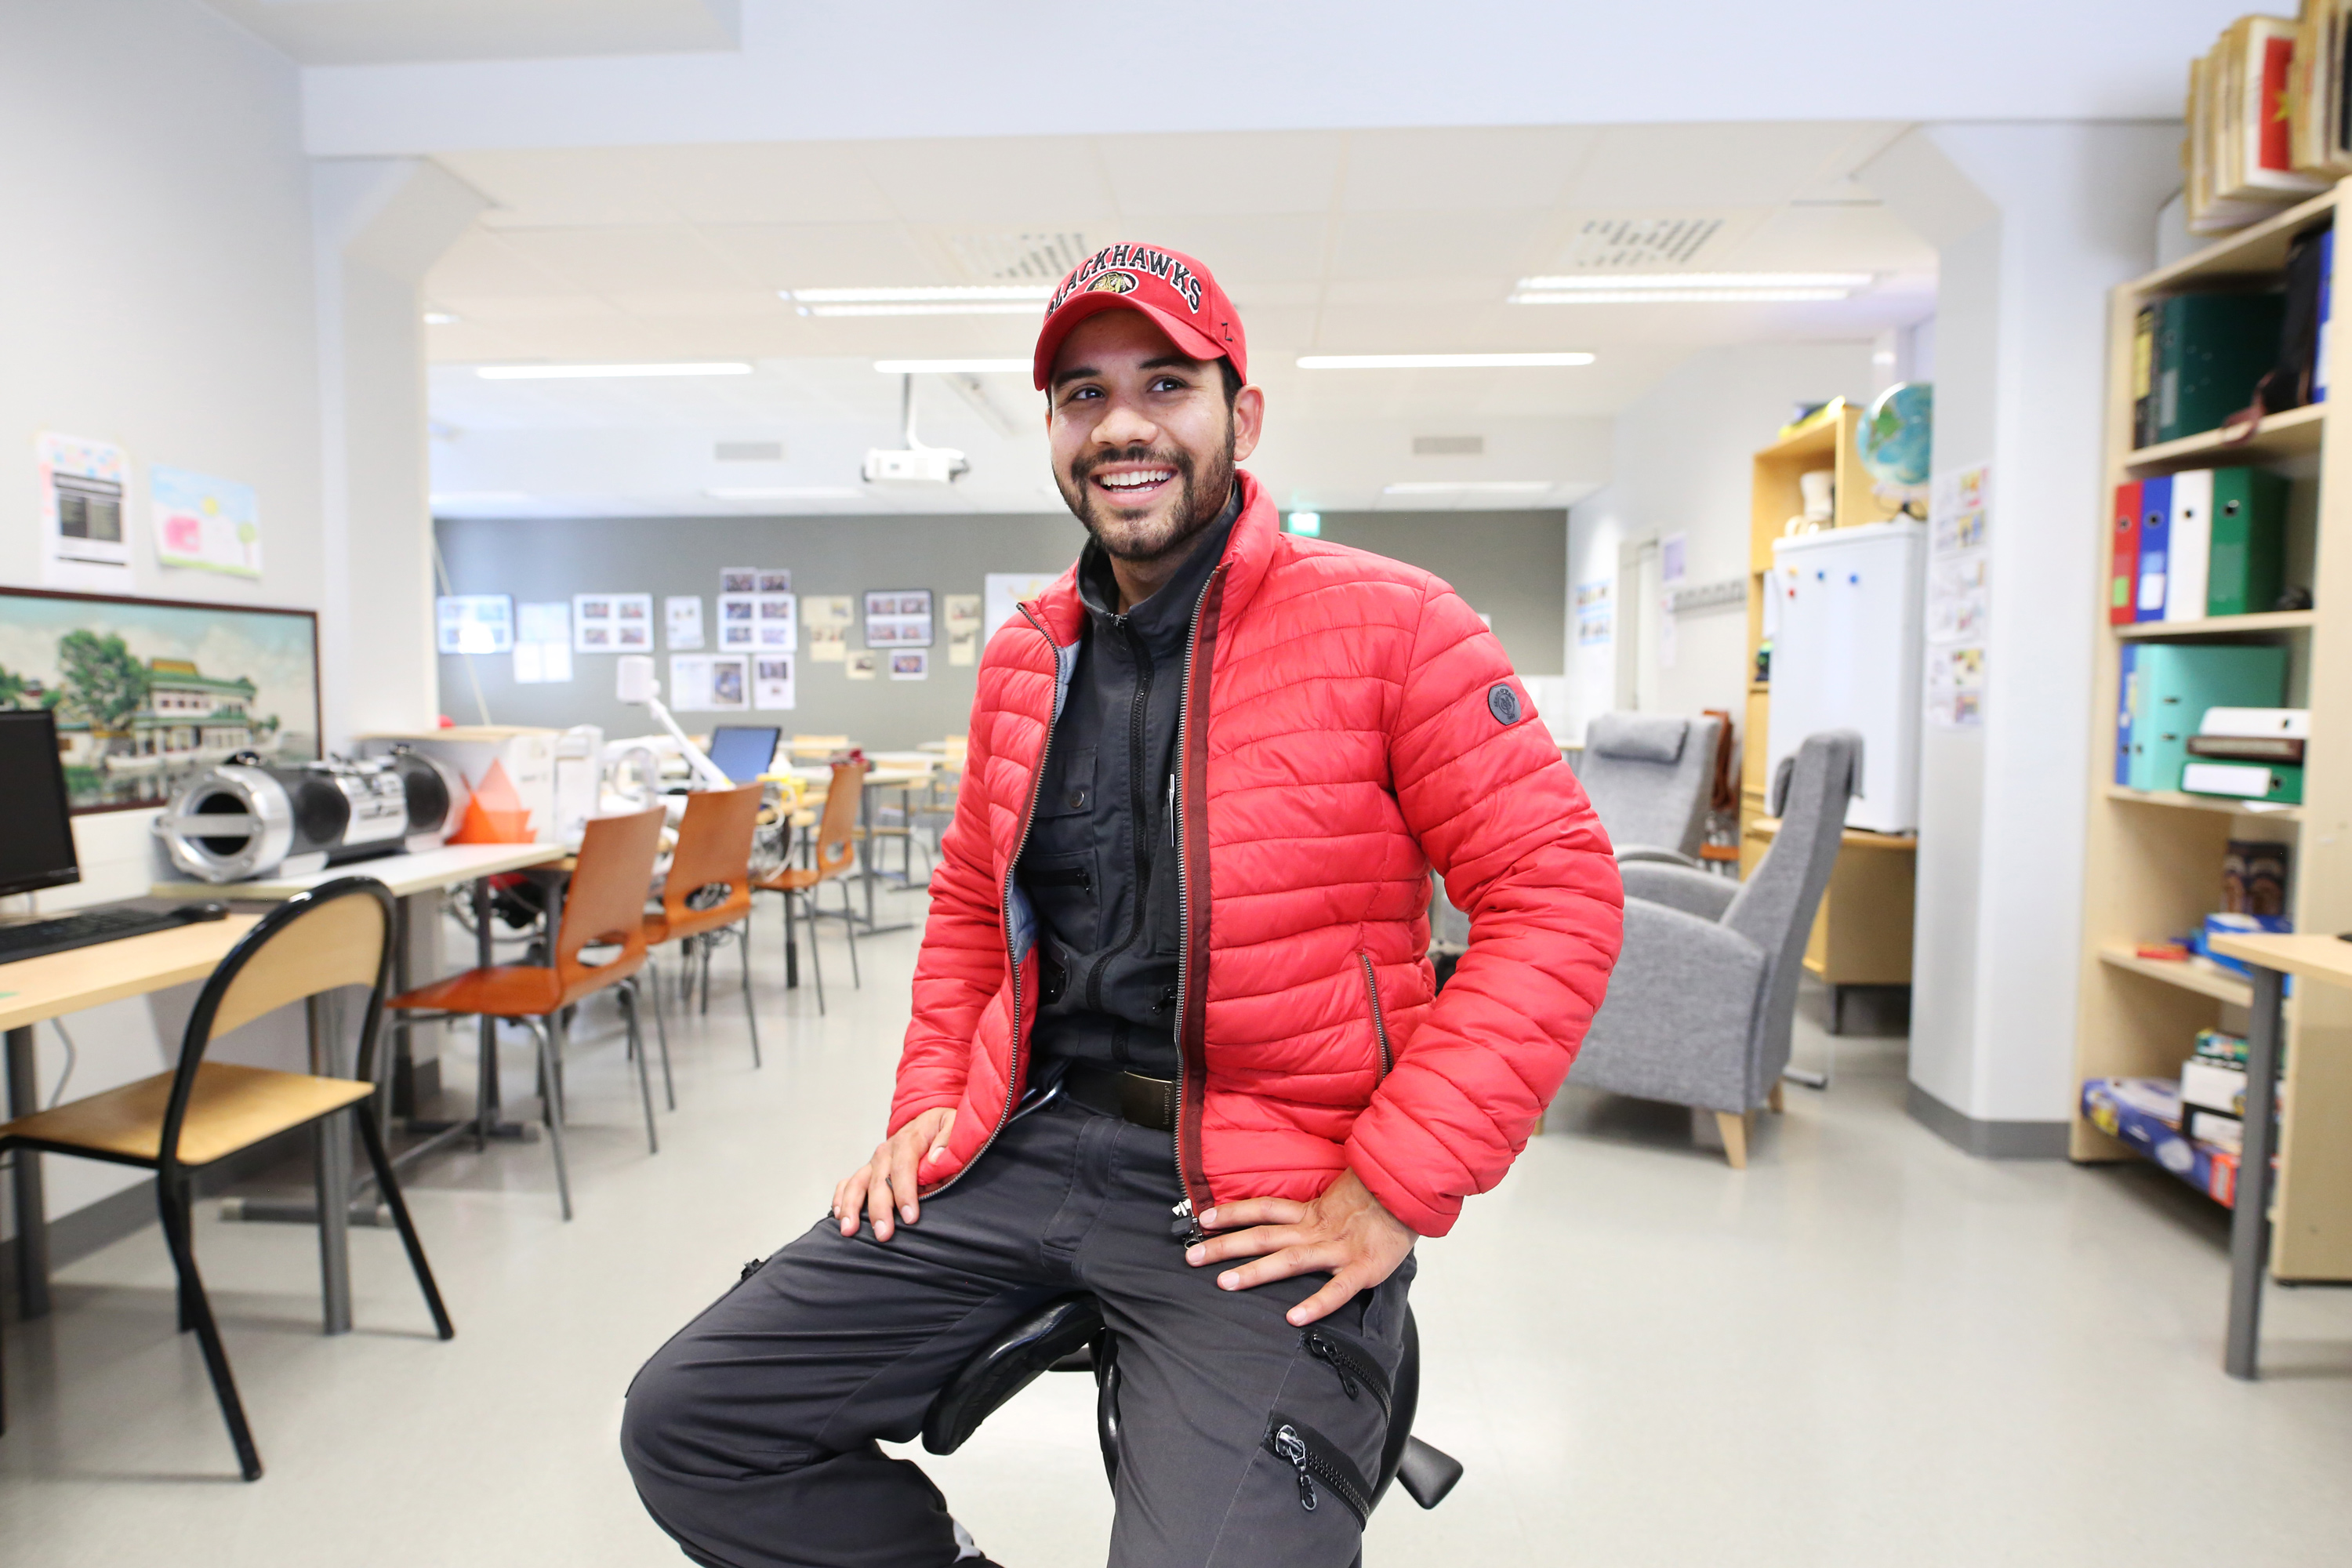 Mohammad Hoseini istuu VALMA-opintojen luokkatilassa, ympärillä näkyy pulpetteja ja muita huonekaluja.